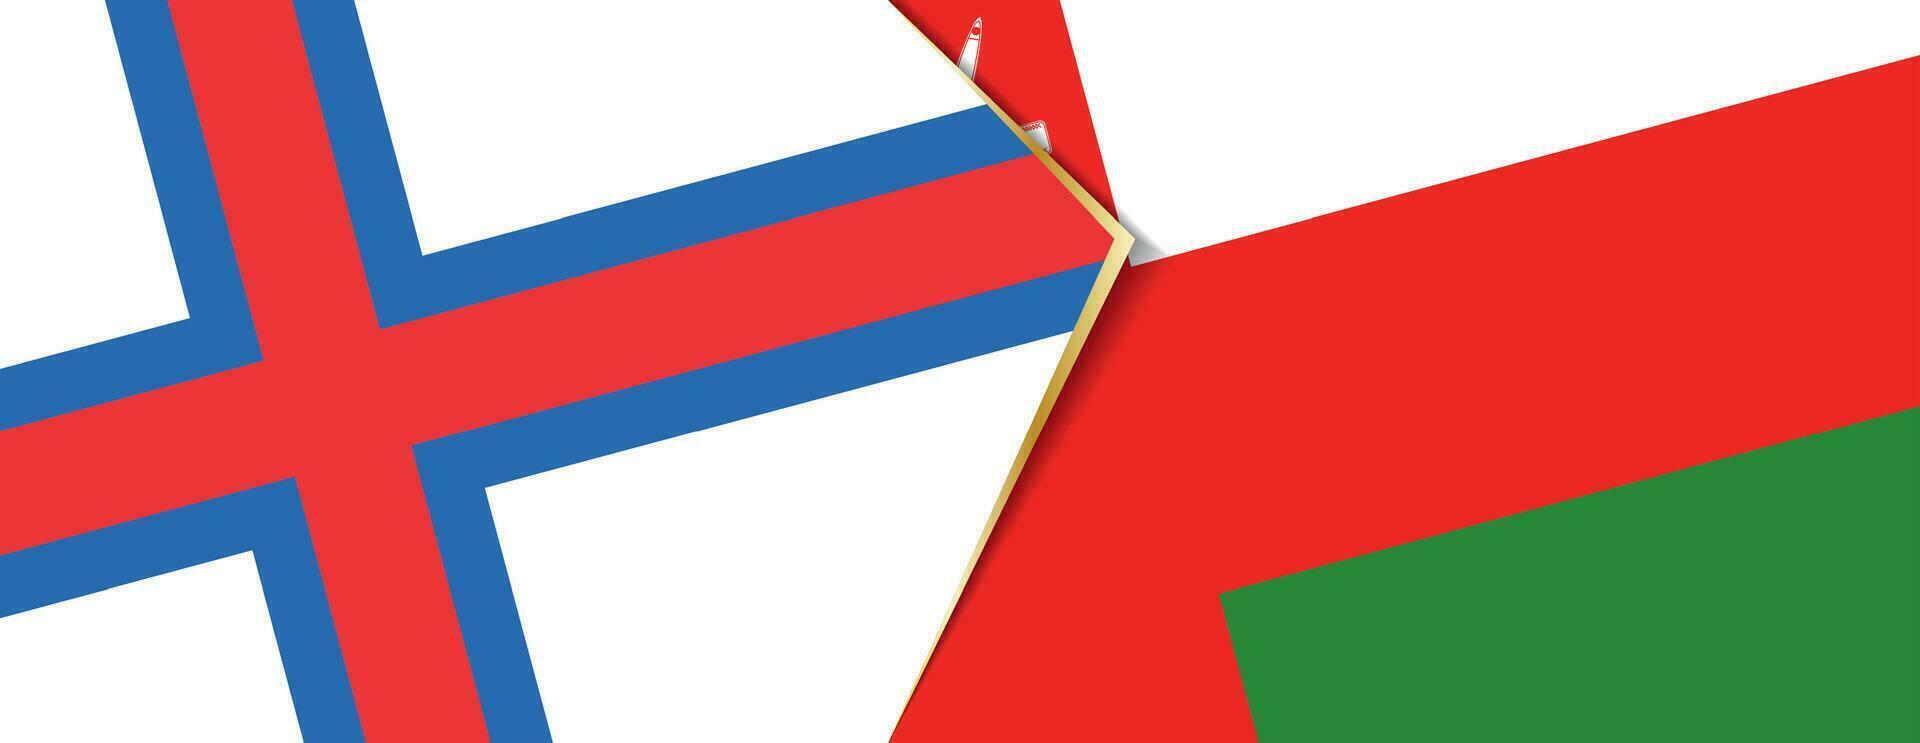 Faeröer eilanden en Oman vlaggen, twee vector vlaggen.